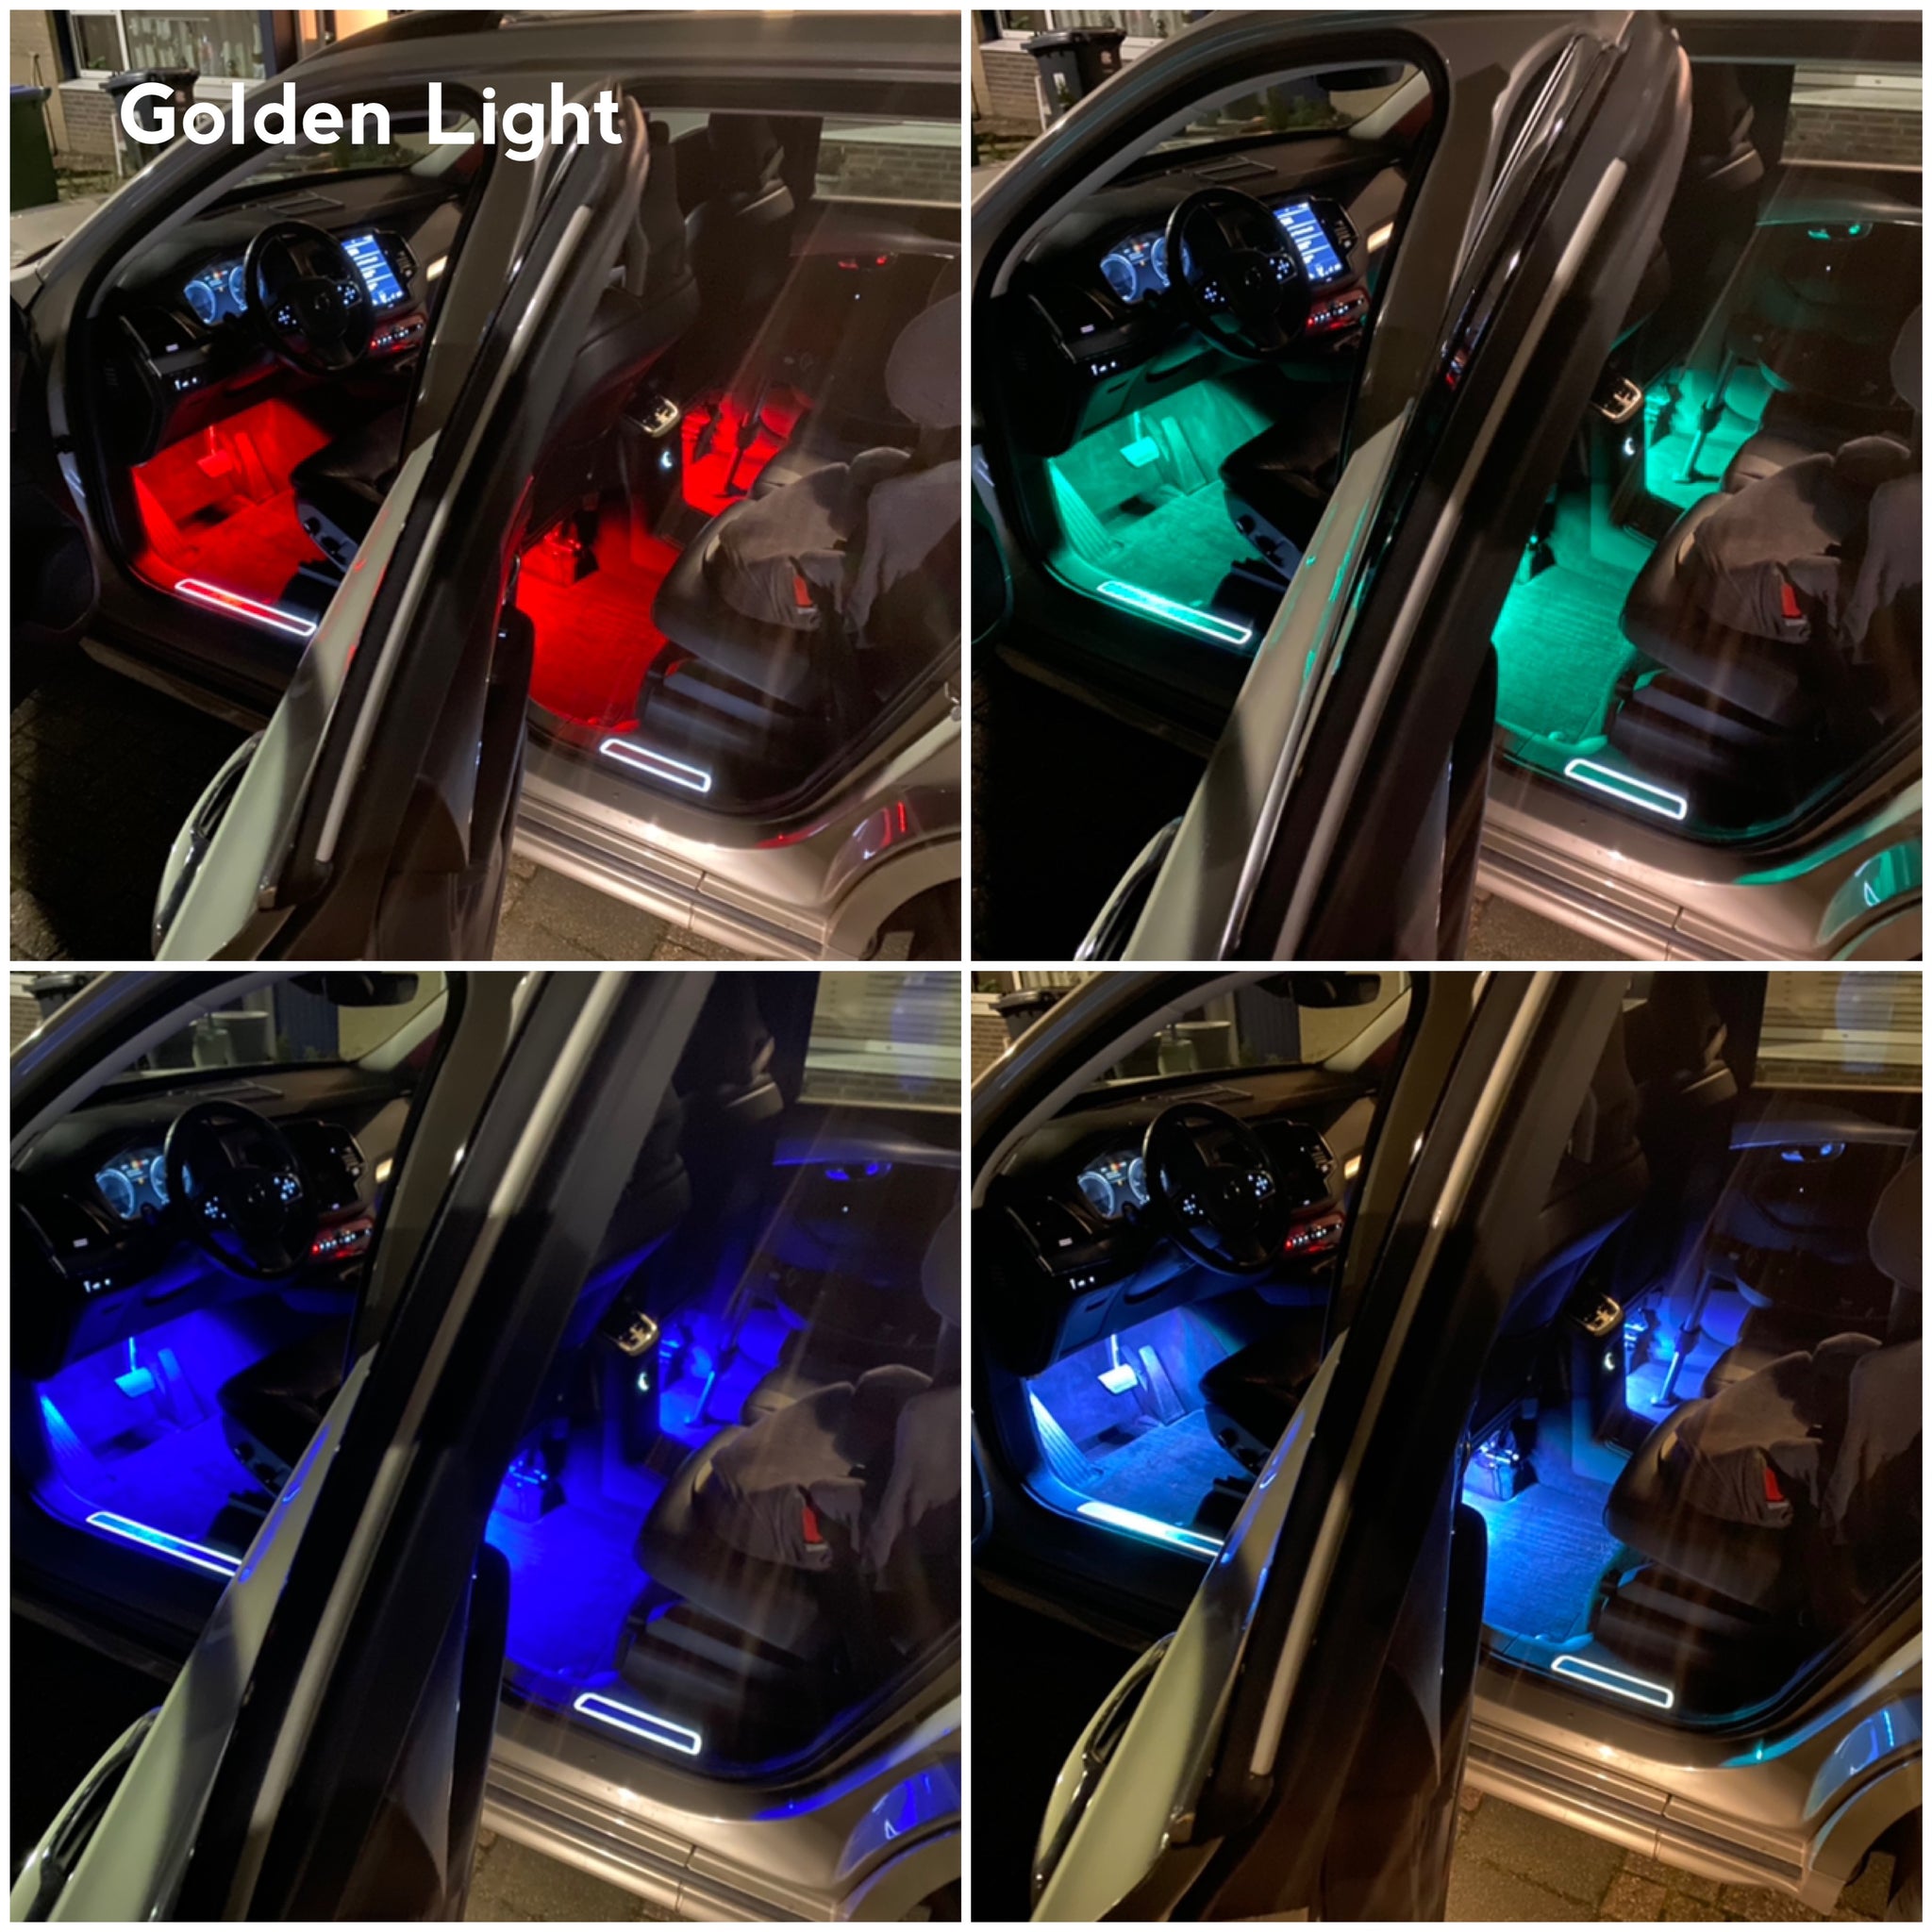 Transparant Kan weerstaan salami Auto LED Interieur Verlichting RGB Strip met USB Aansluiting – Golden Light  Shop